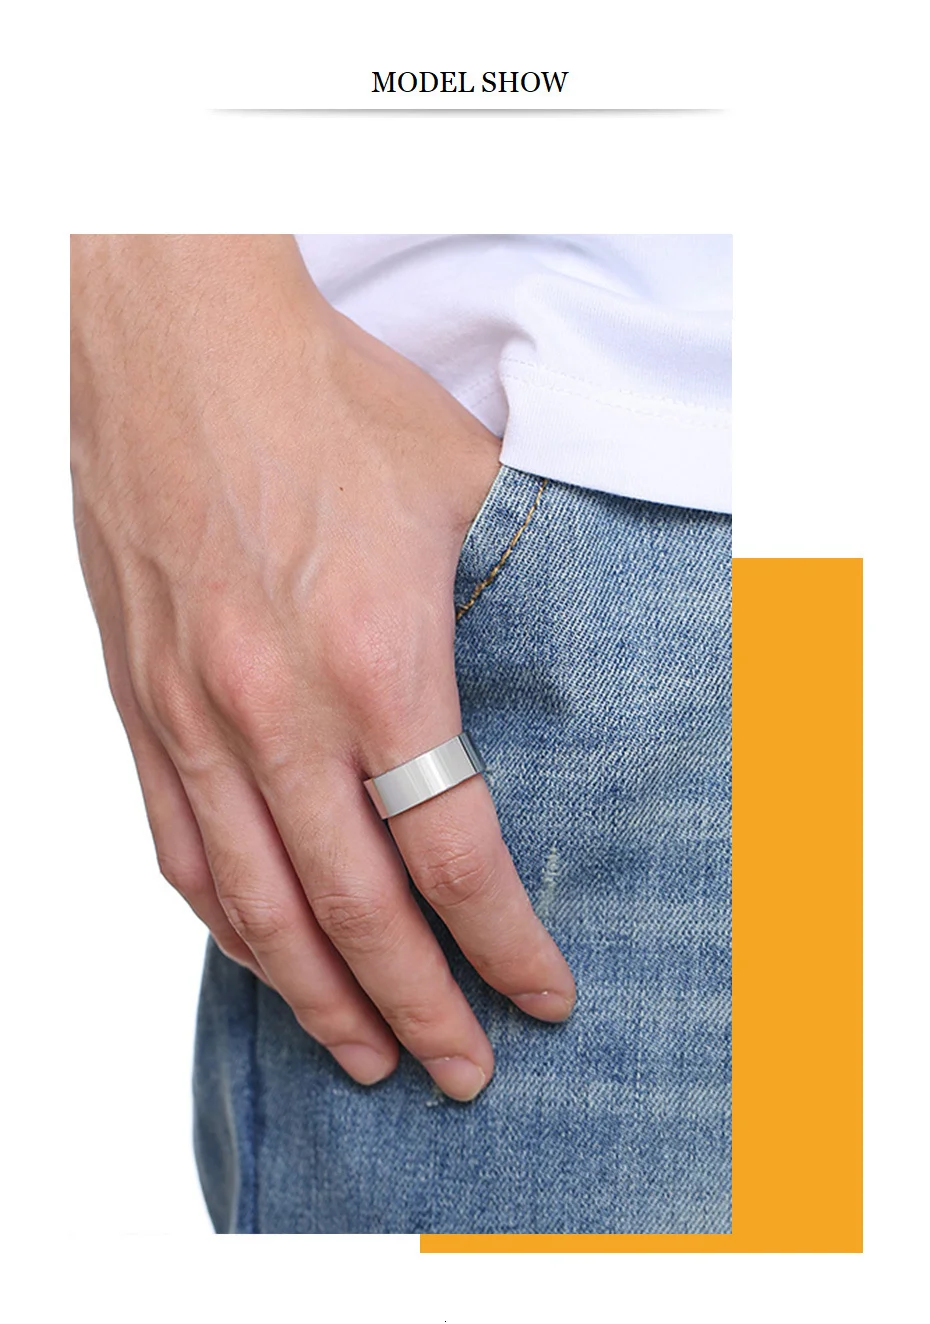 Vnox 8 мм классическое обычное кольцо для мужчин персонализированное имя Глянцевая нержавеющая сталь обручальное кольцо повседневный мужской